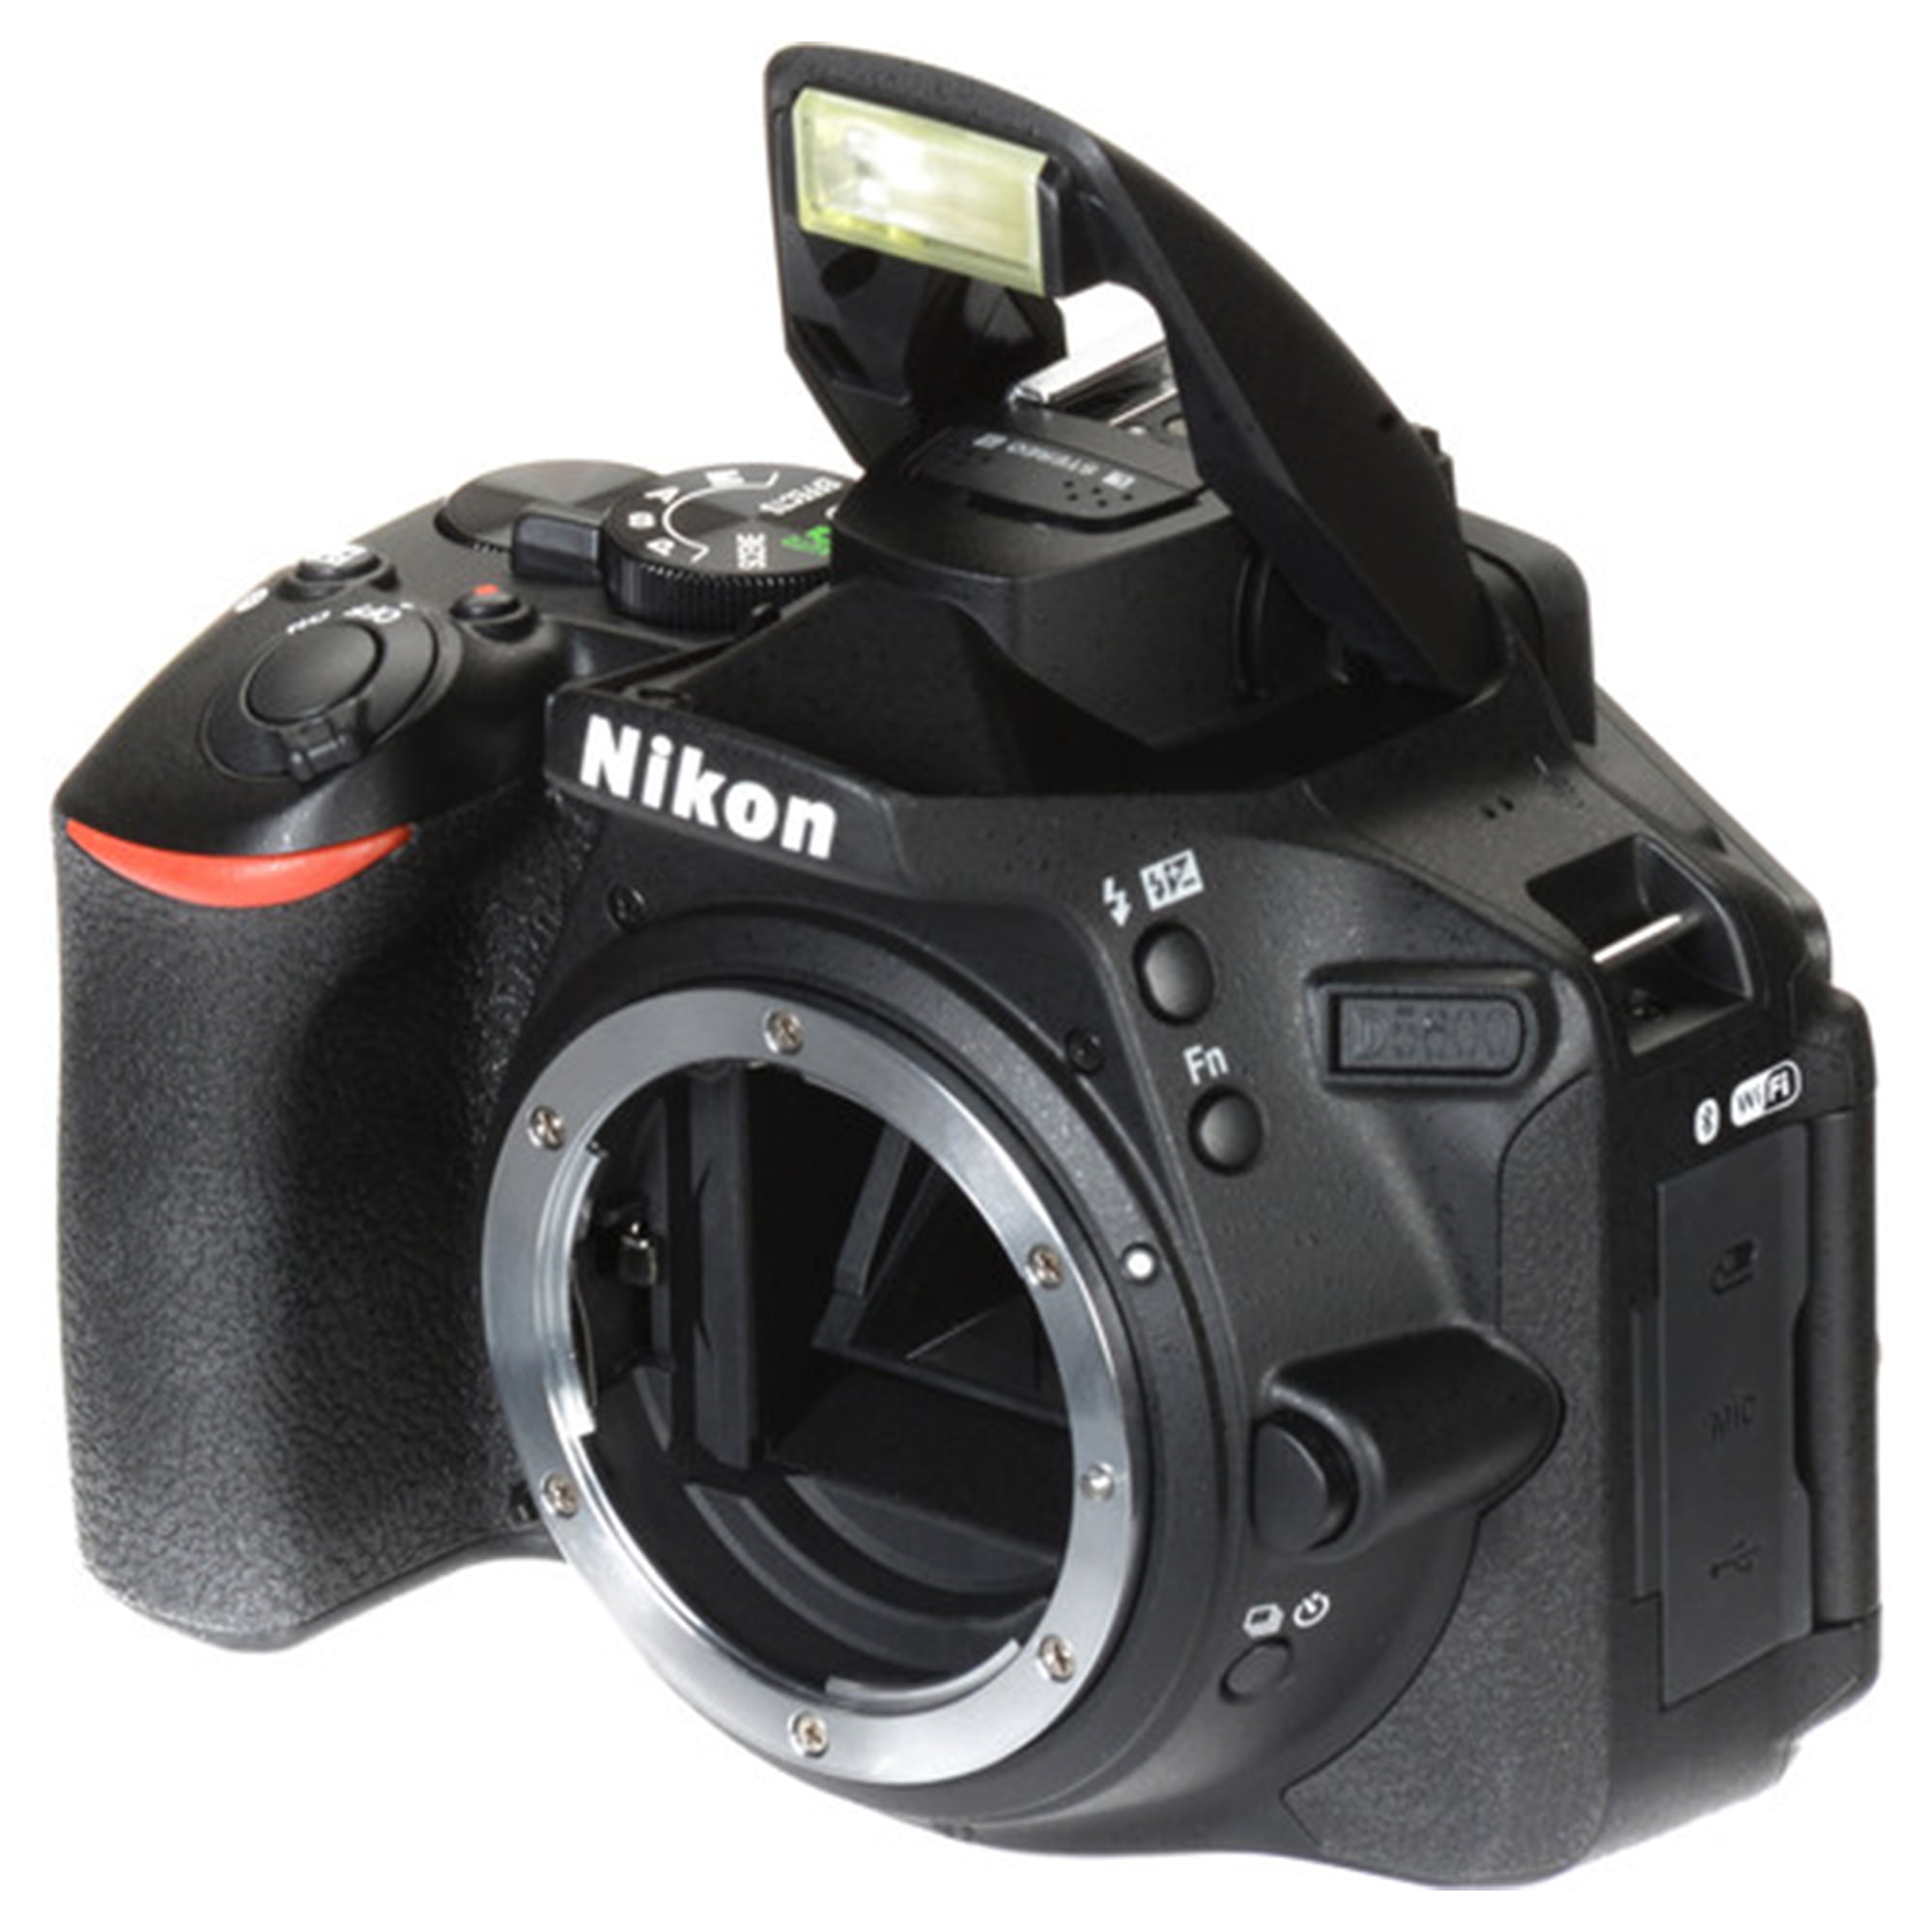 Nikon D5600 DSLR Camera 24.2MP Full HD 1080p with 18-55mm + AF FX